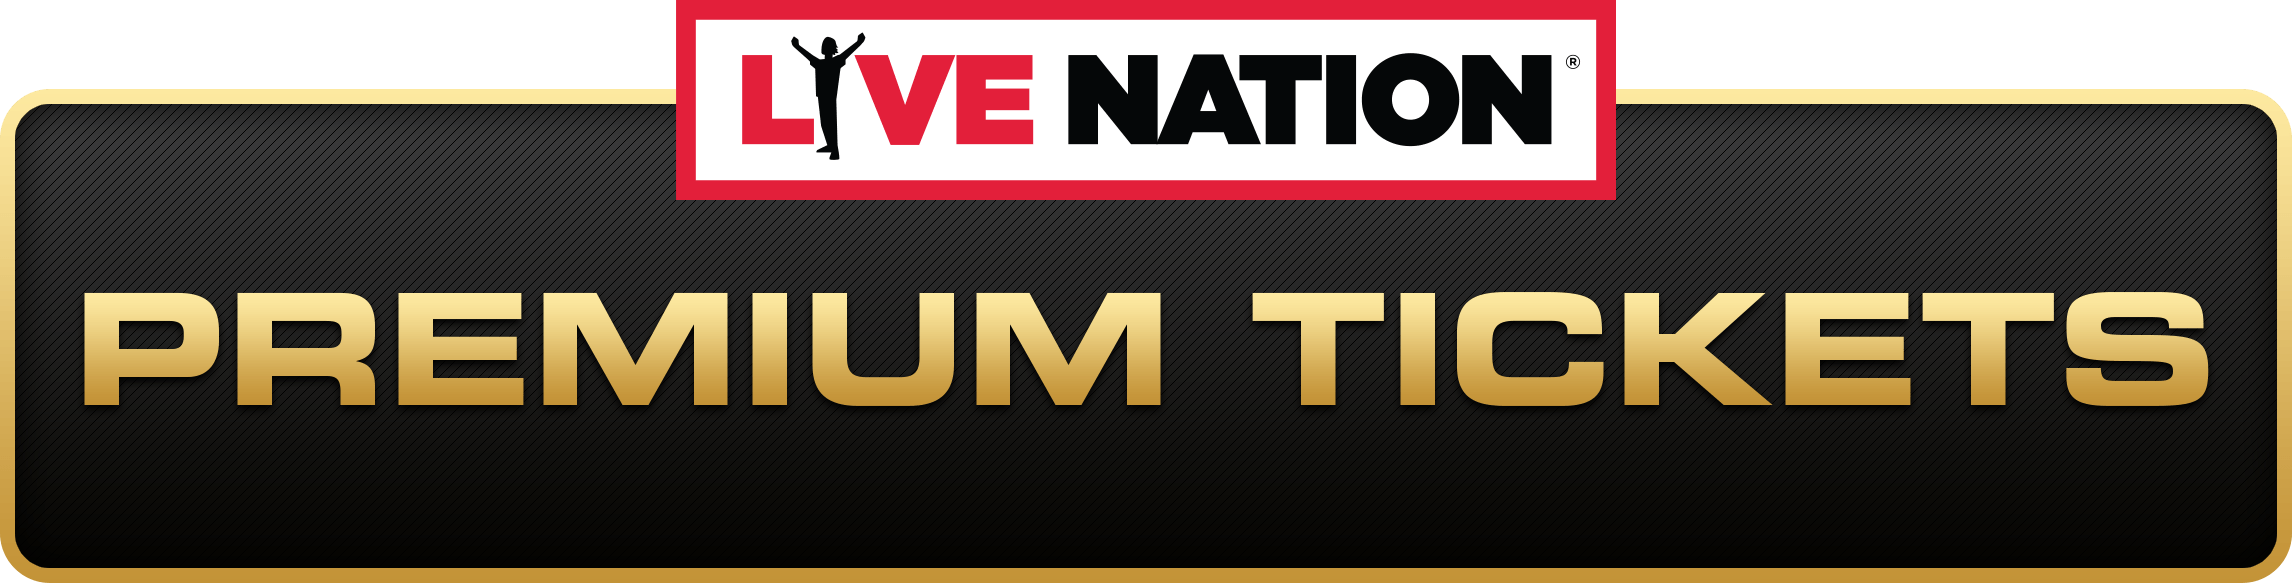 Livenation.com Logo - Home. Live Nation Premium Tickets